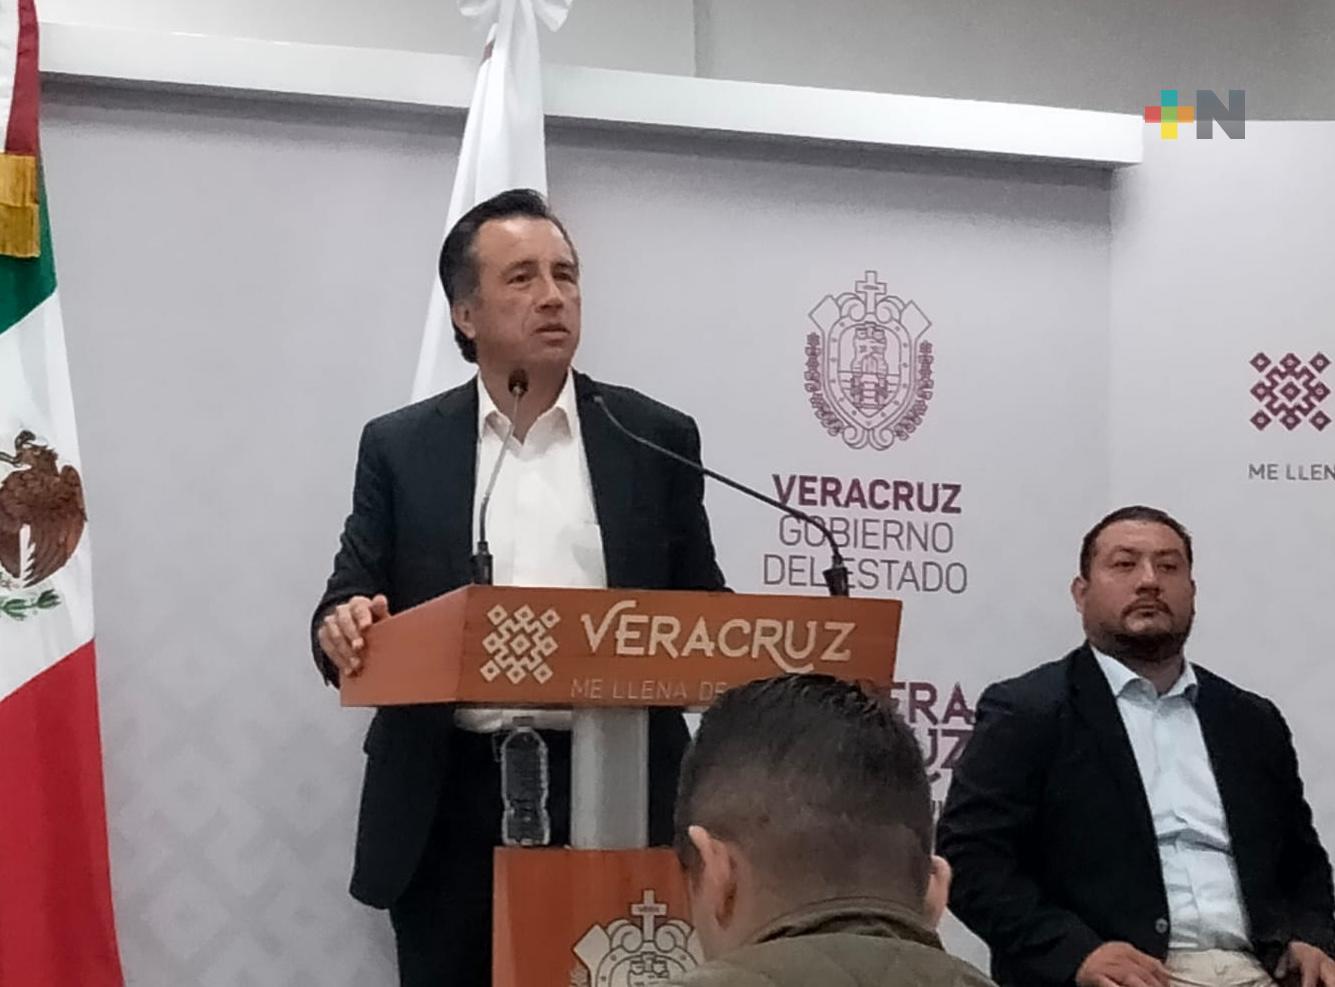 Se dará con el paradero de los responsables del multihomicidio en Veracruz: Gobernador